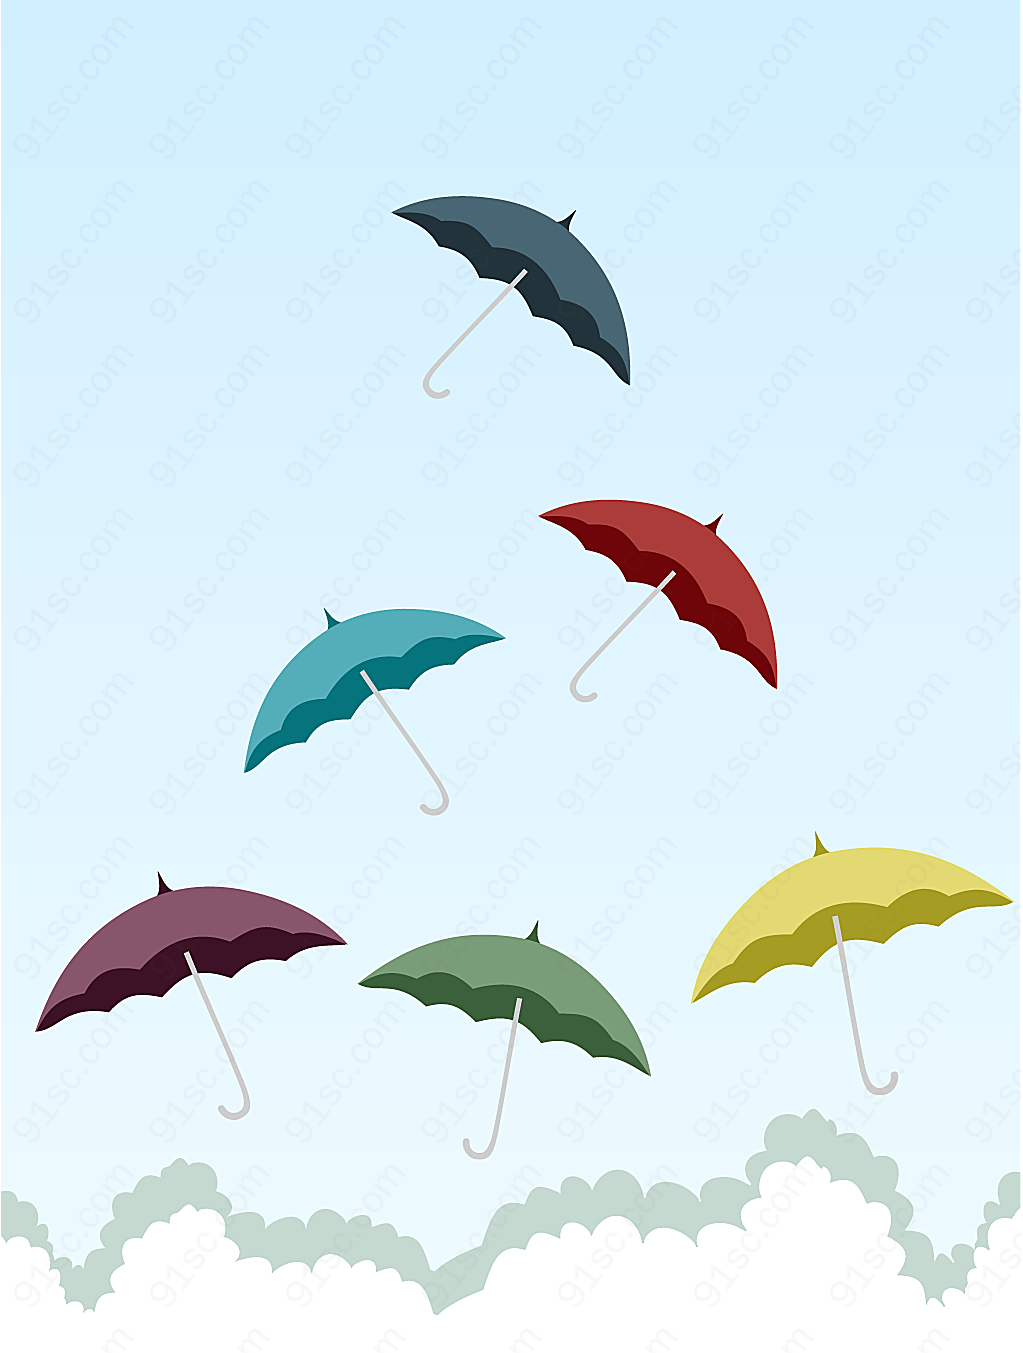 雨伞主题矢量矢量生活用品